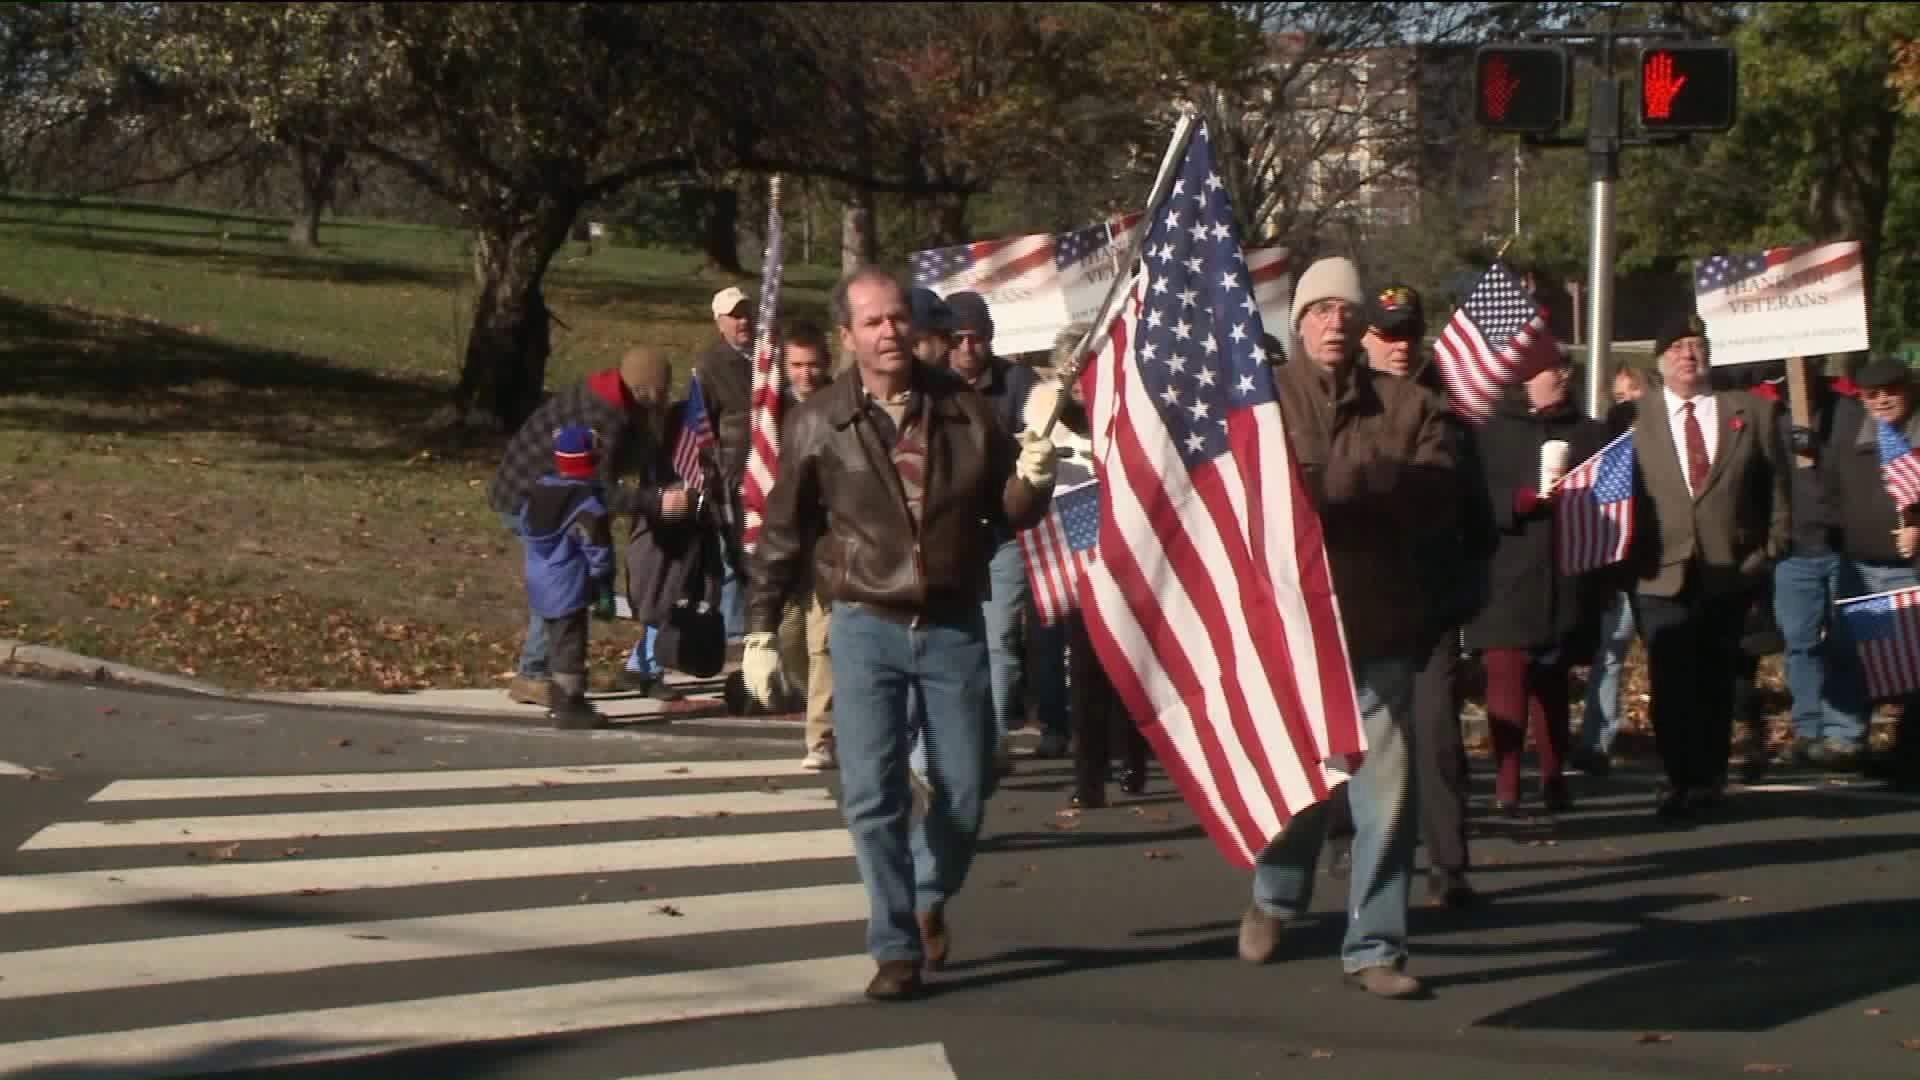 Veterans march in unofficial Veterans parade in Hartford